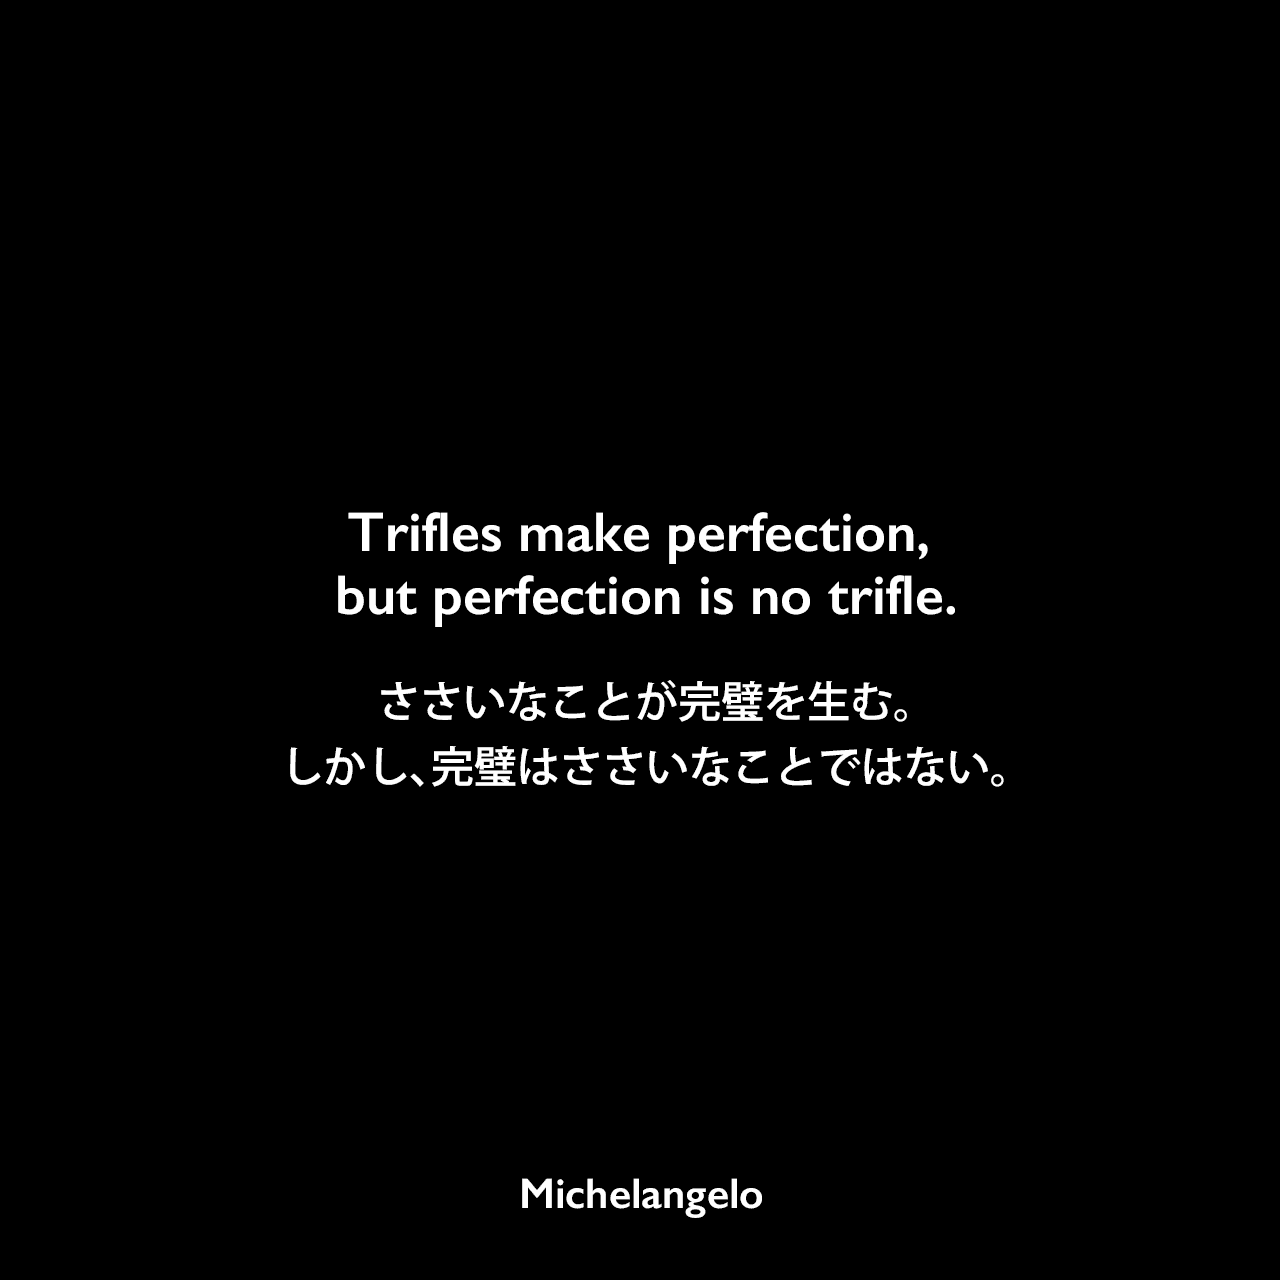 Trifles make perfection, but perfection is no trifle.ささいなことが完璧を生む。しかし、完璧はささいなことではない。